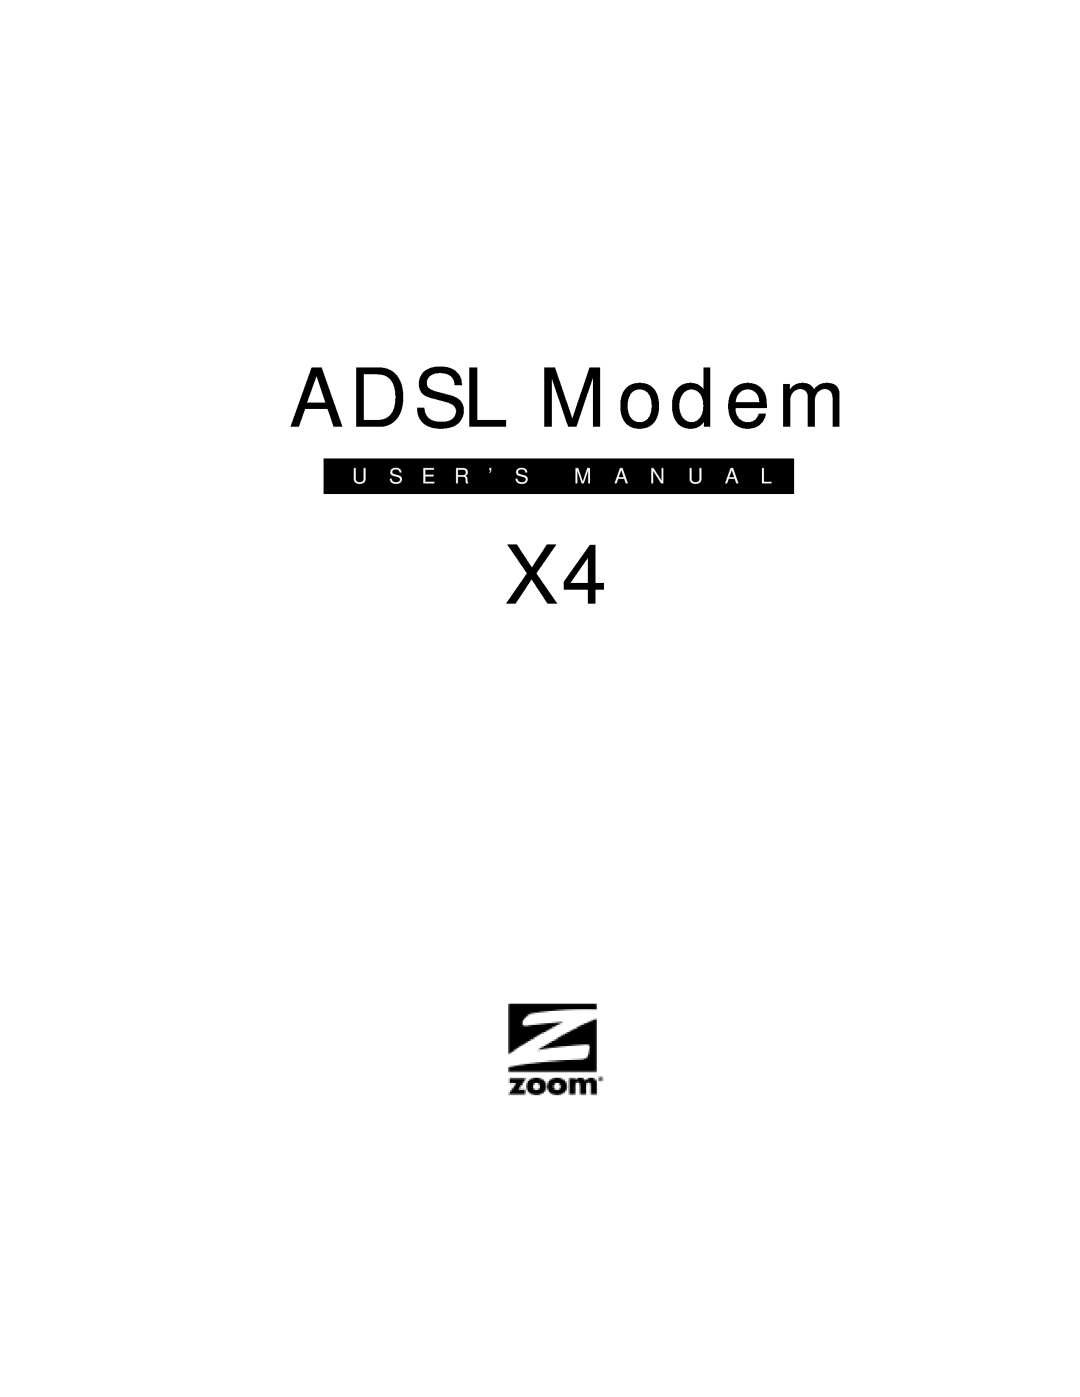 Zoom X4 manual ADSL Modem, U S E R ’ S M A N U A L 